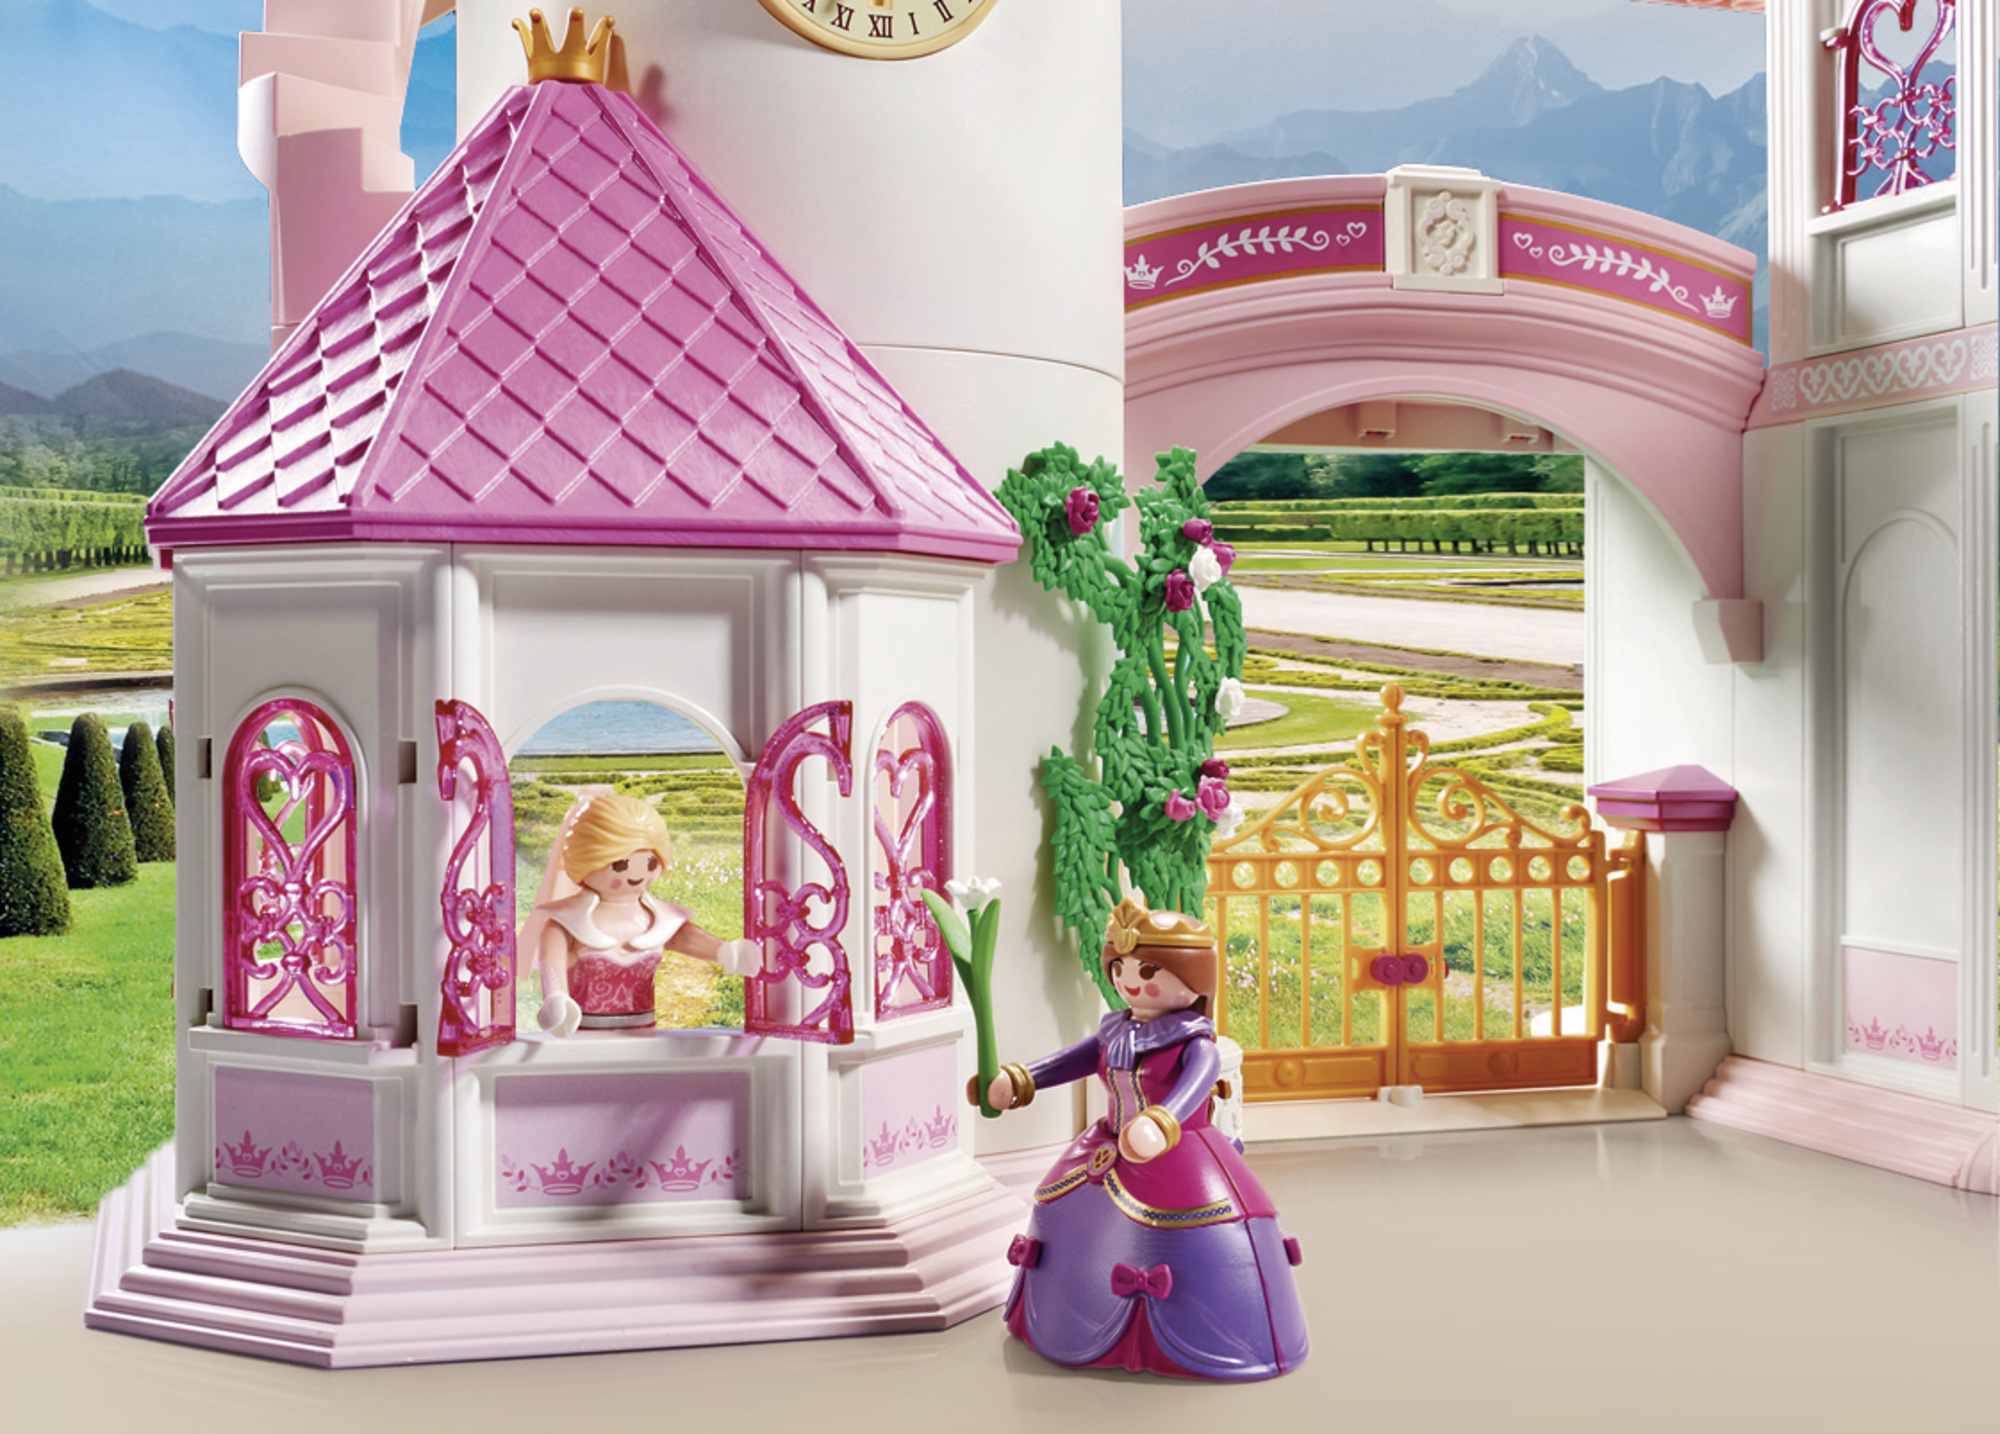 Playmobil Princess Παραμυθένιο Πριγκιπικό Παλάτι 70447 - Playmobil, Playmobil Princess